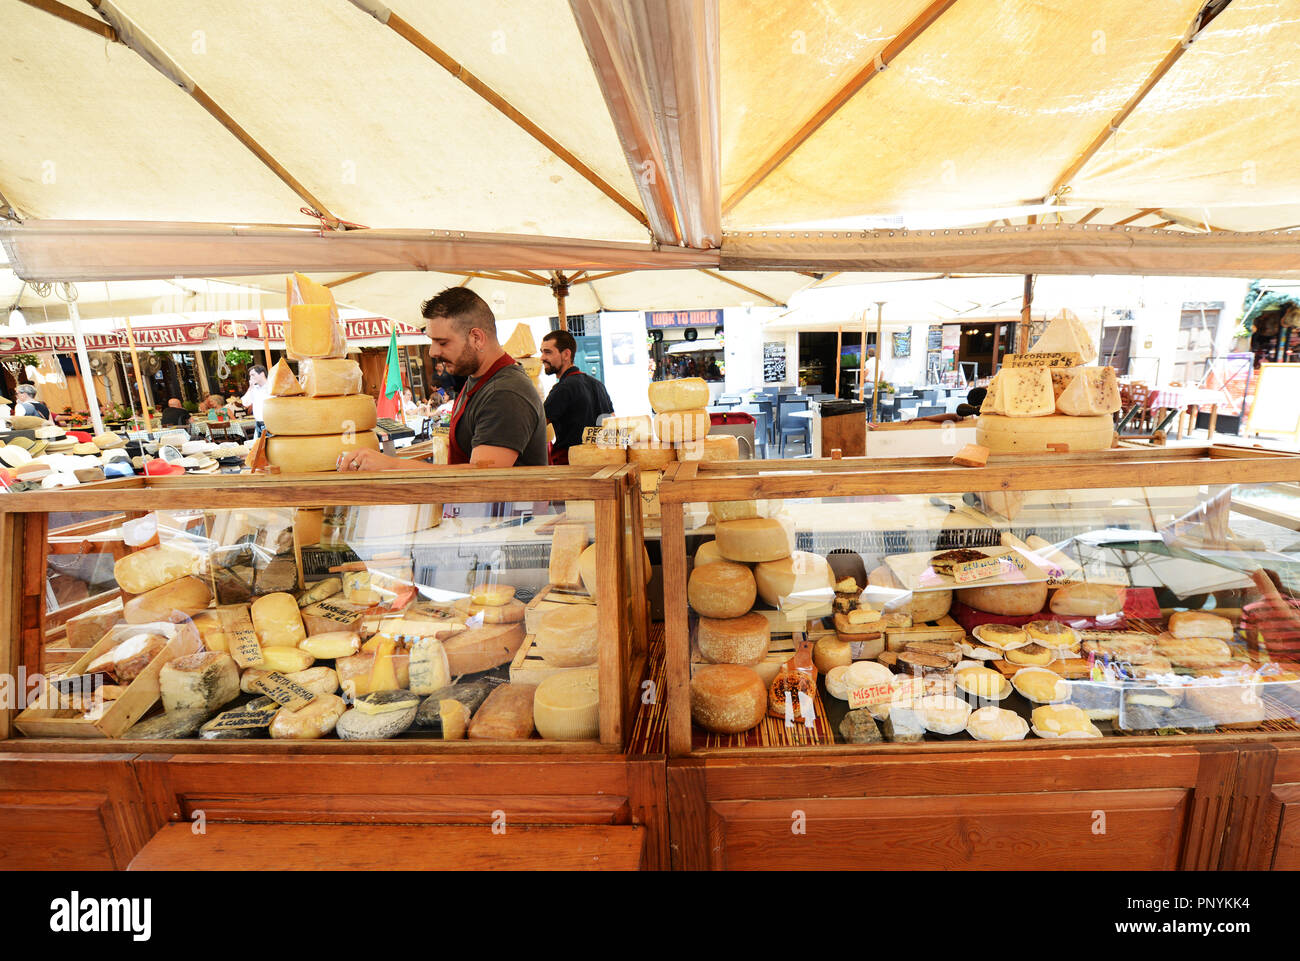 A Popular local produce market in Campo de' Fiori sq. in Rome. Stock Photo